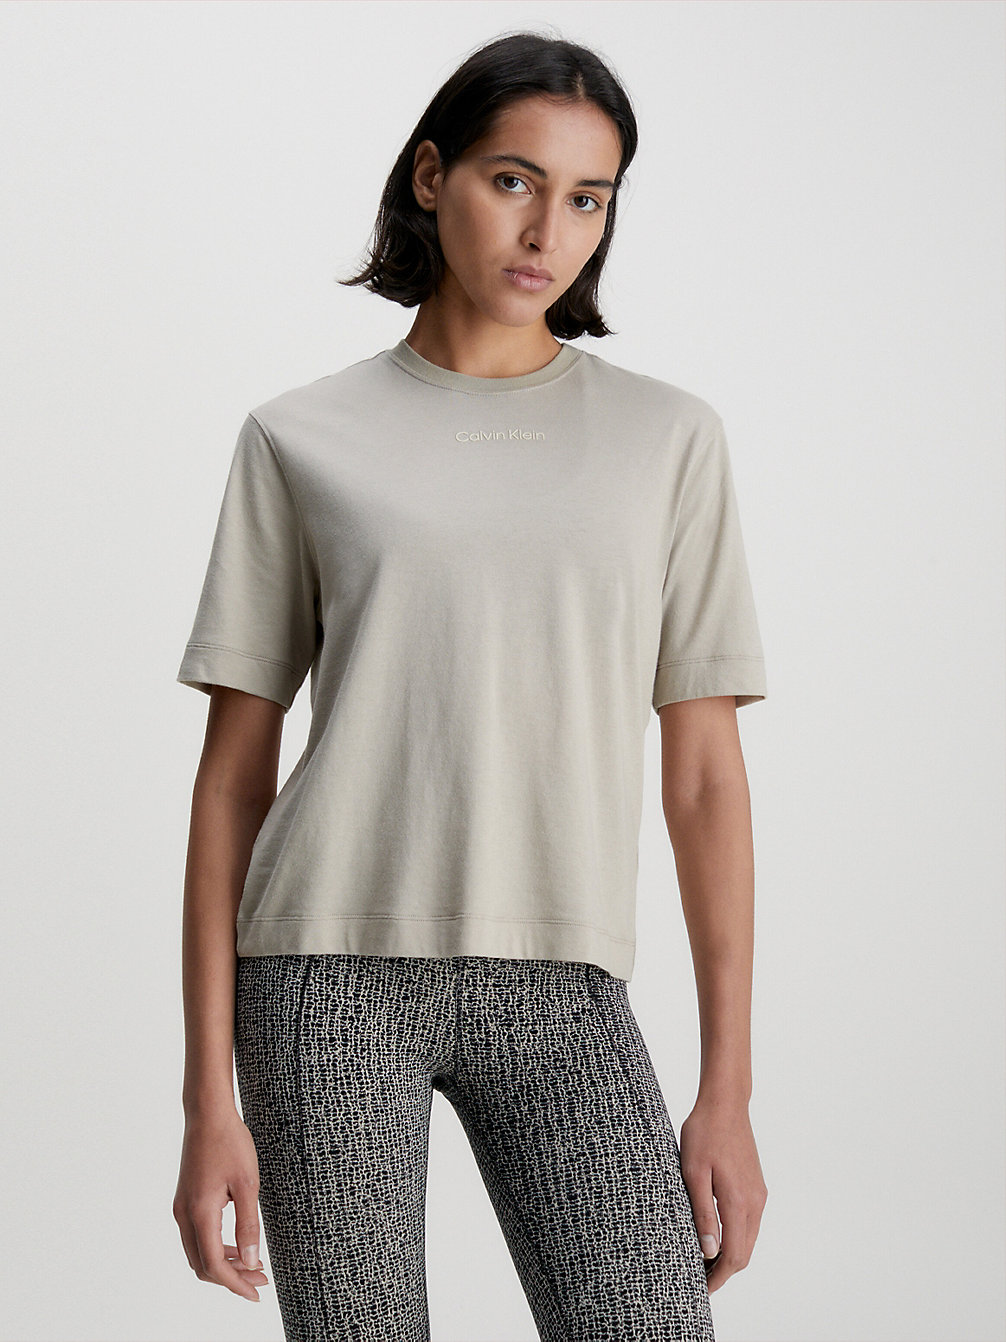 WINTER LINEN > T-Shirt Sportowy > undefined Kobiety - Calvin Klein